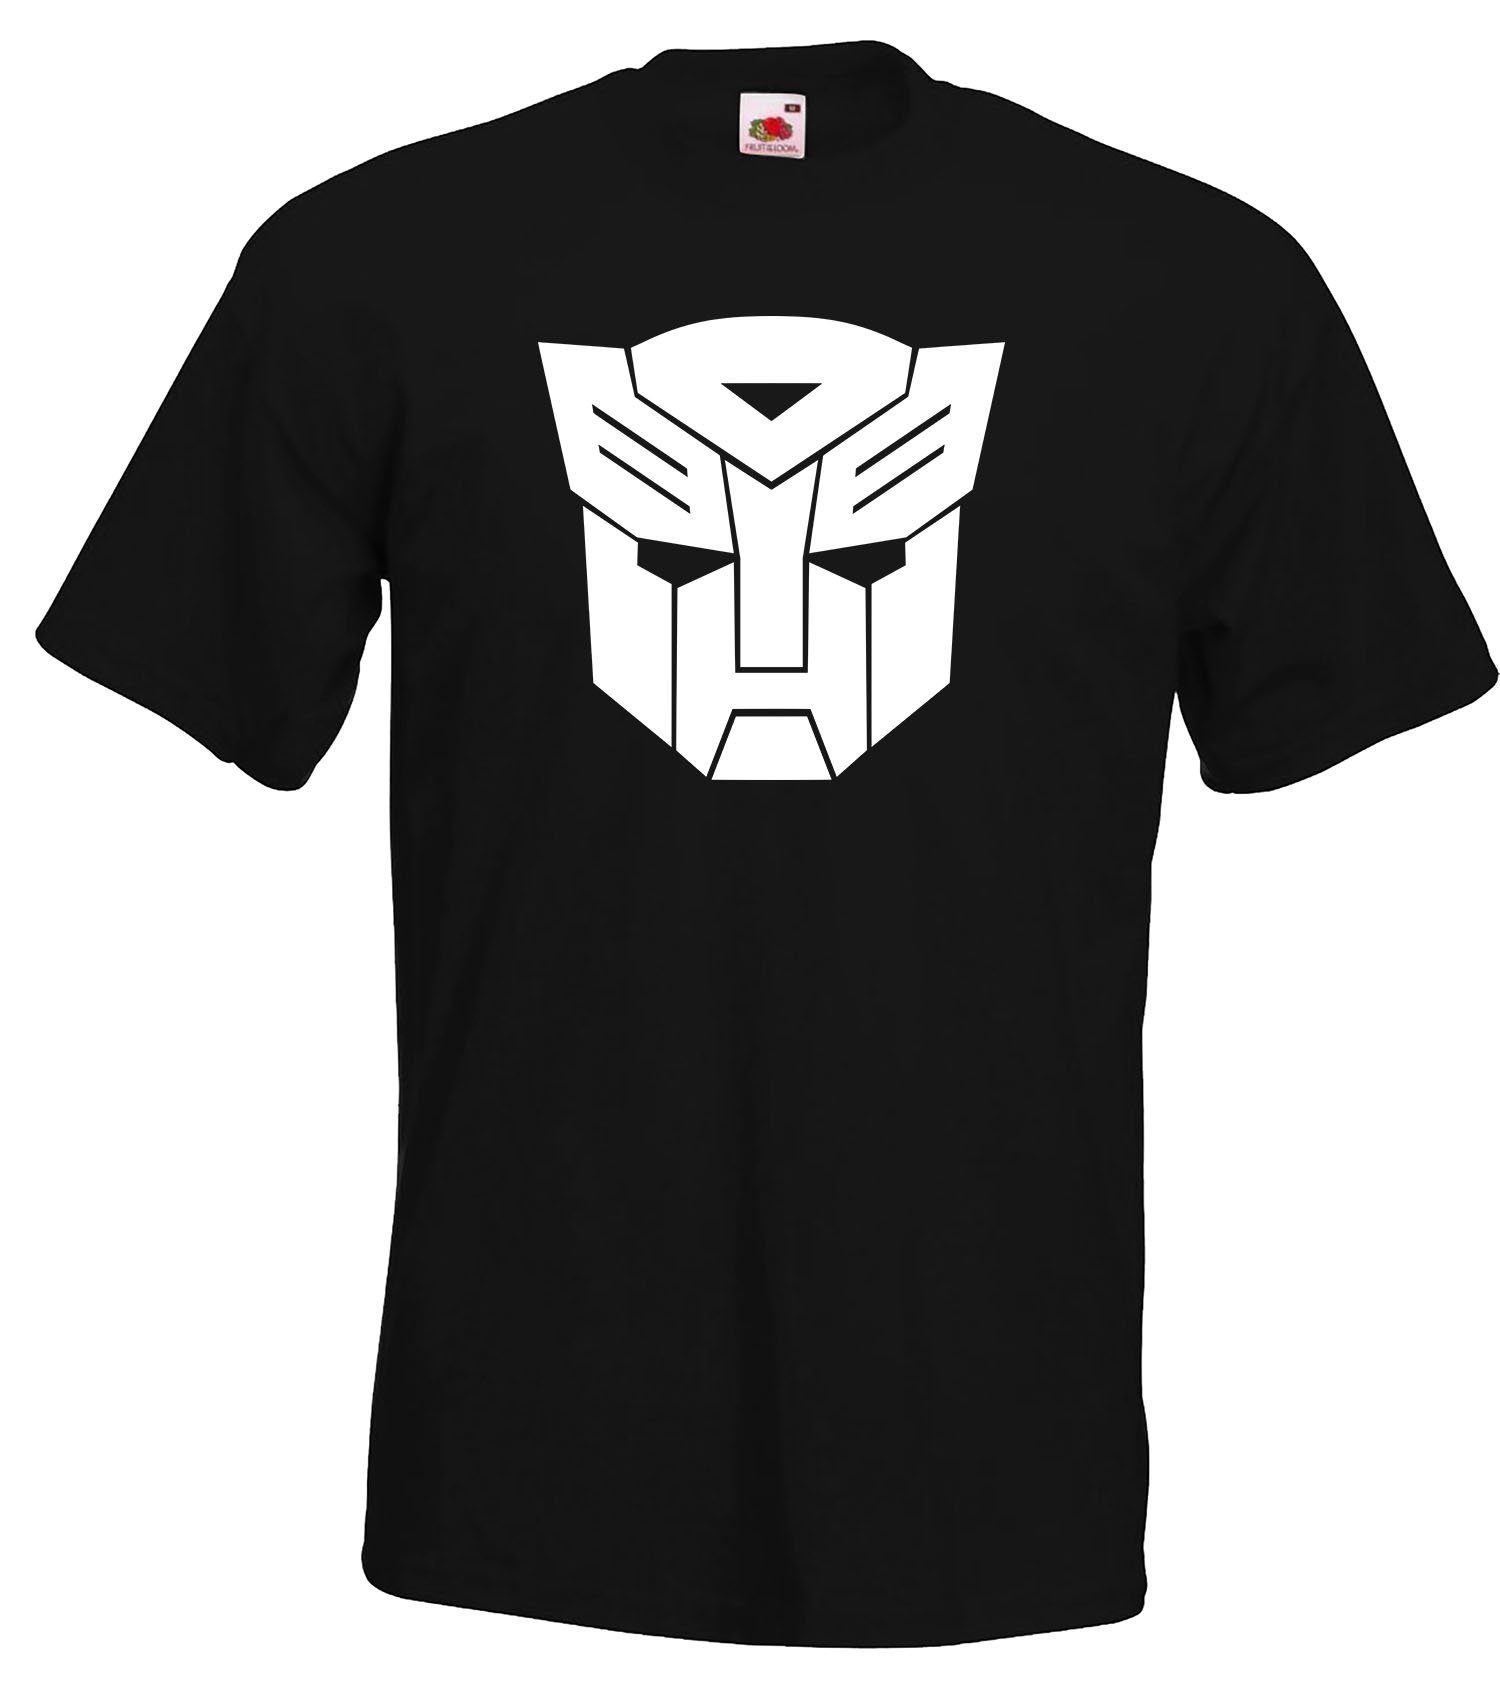 Autobot schwarz Designz Youth trendigem T-Shirt Herren Shirt Motiv mit